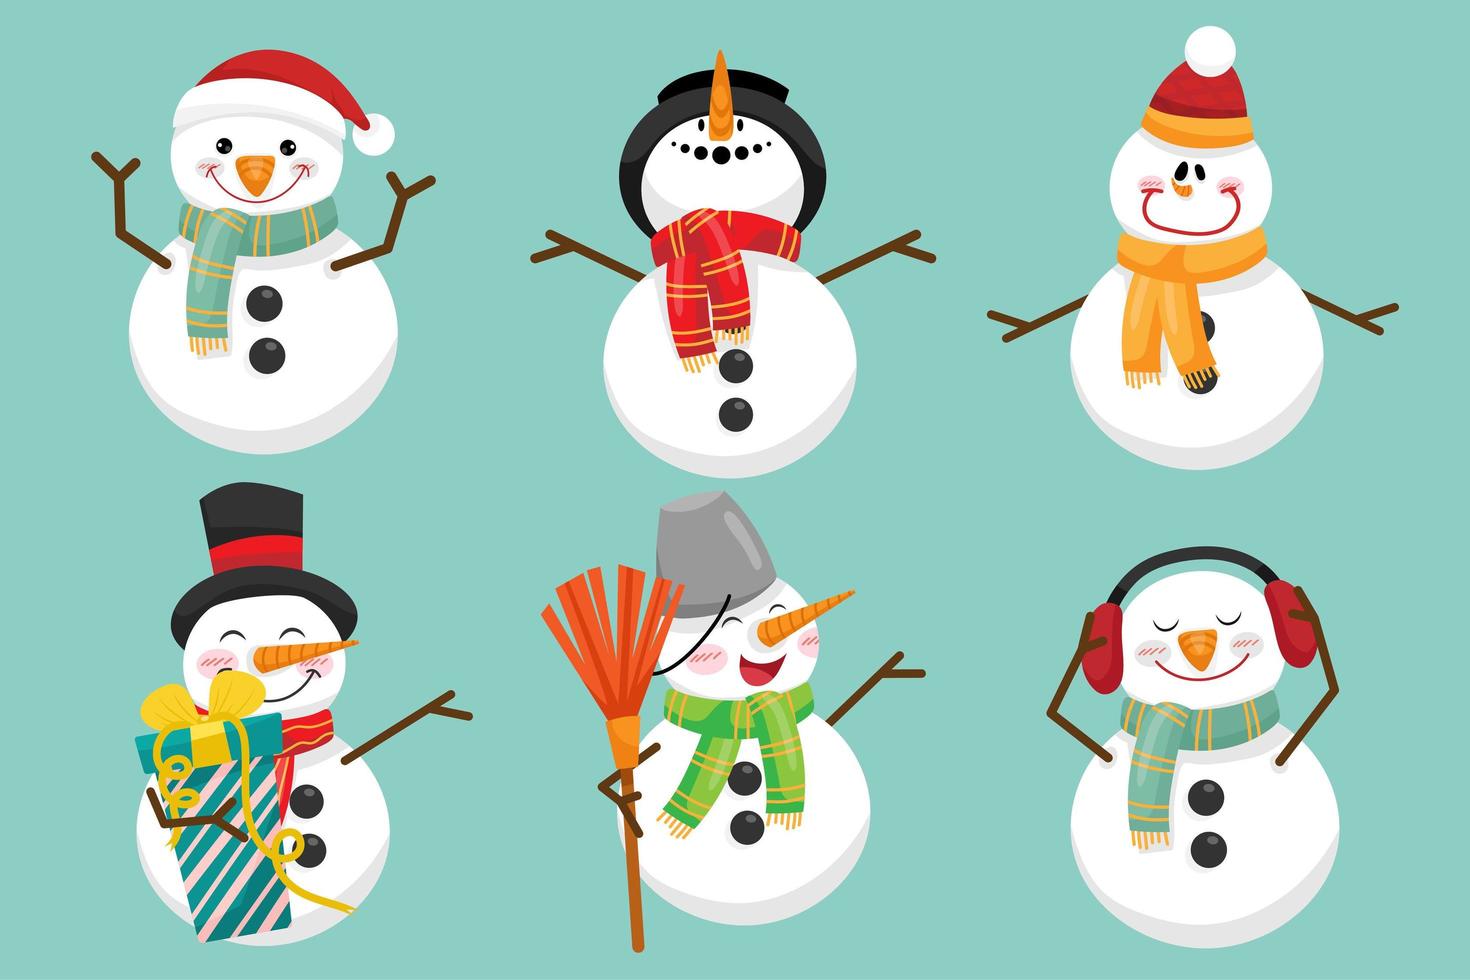 personnages de bonhomme de neige dans diverses poses et scènes. élément de découpe joyeux noël vecteur